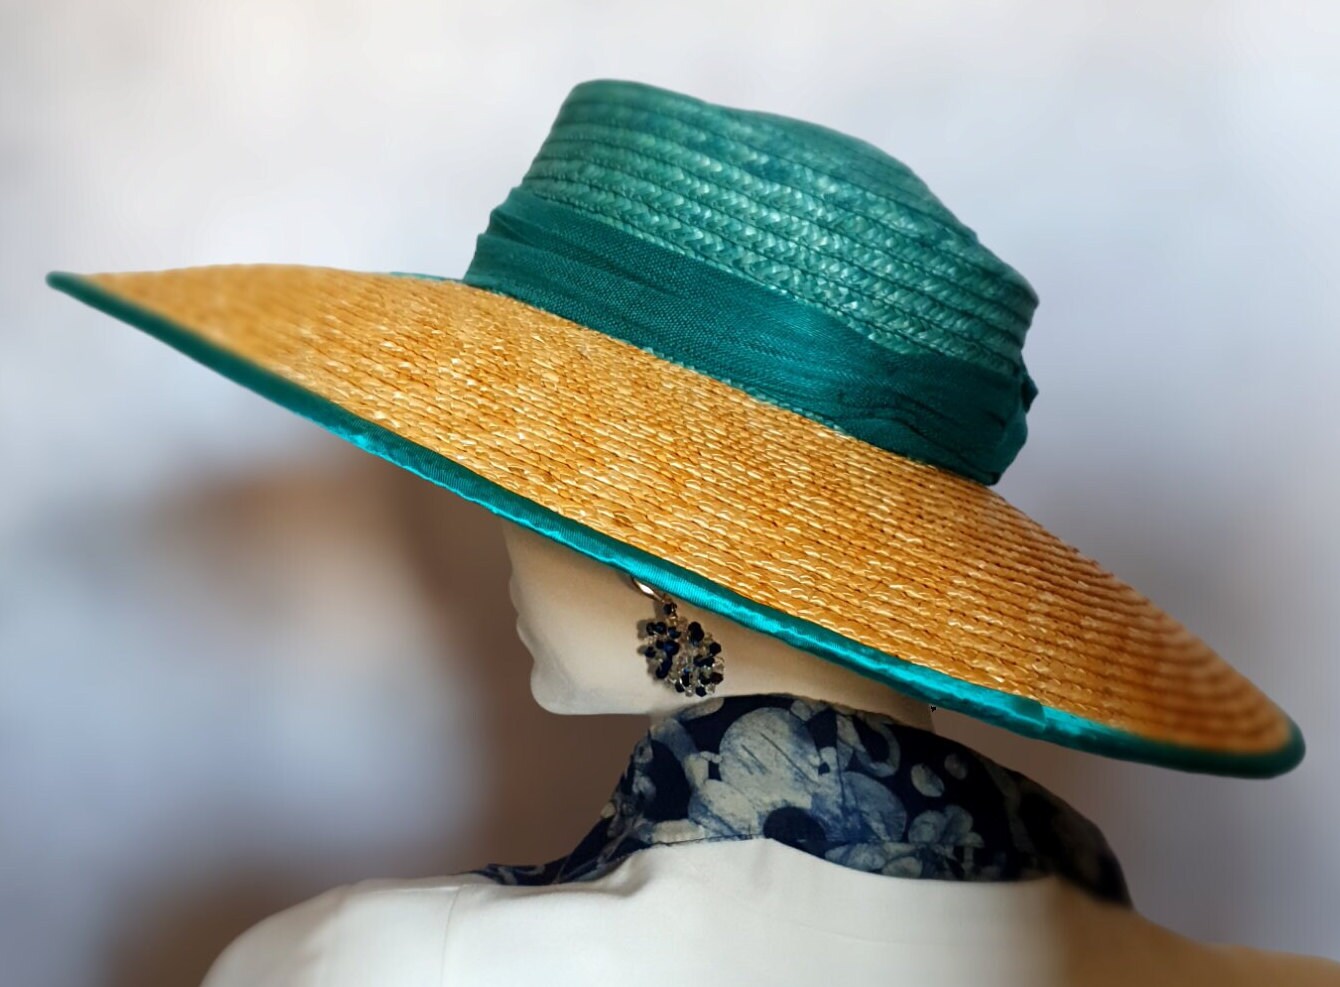 Elegante handgemaakte dameshoed met abaca zijde, bruiloft hoed, gast hoed, zomer hoed, gast hoofddeksel, stro hoed, speciale gelegenheden